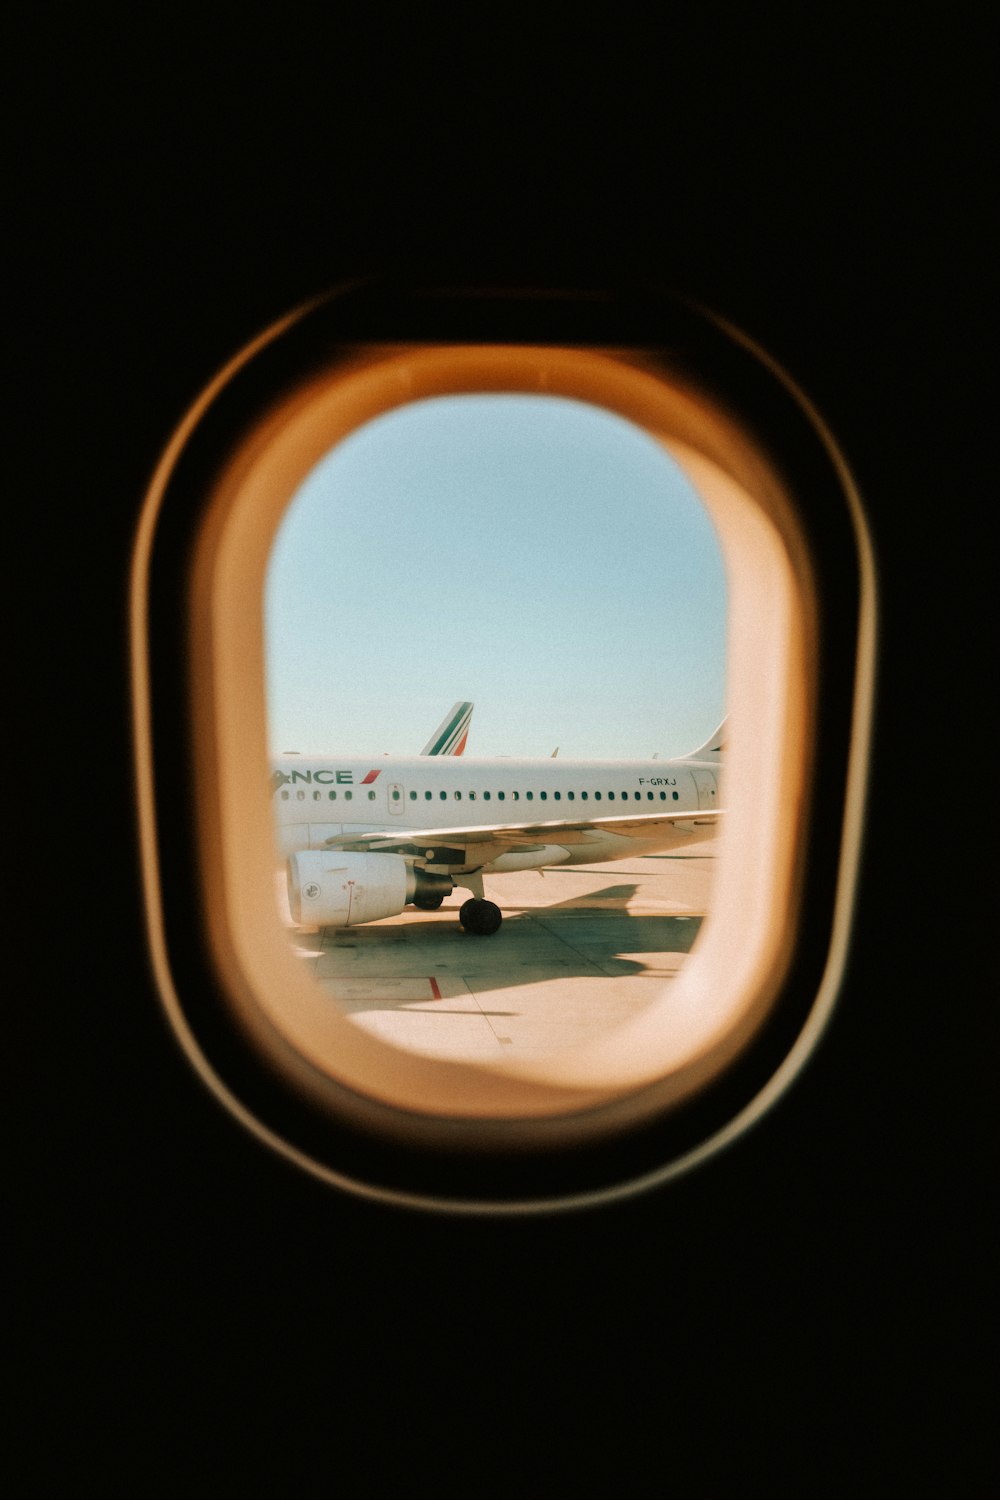 vista da janela do avião da asa do avião durante o dia